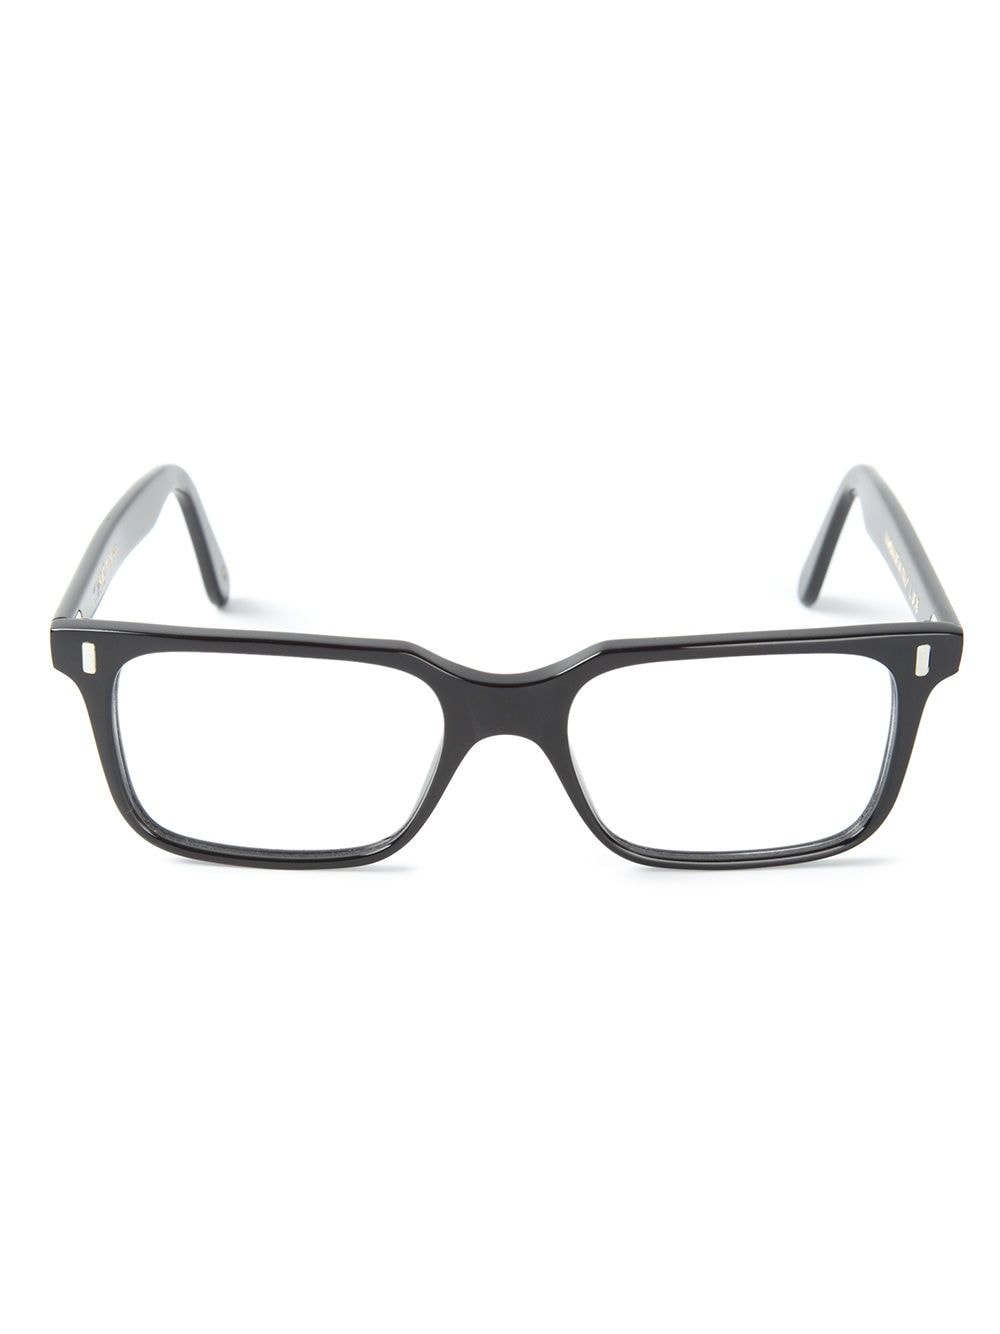 Lgr Rectangular Glasses In Black